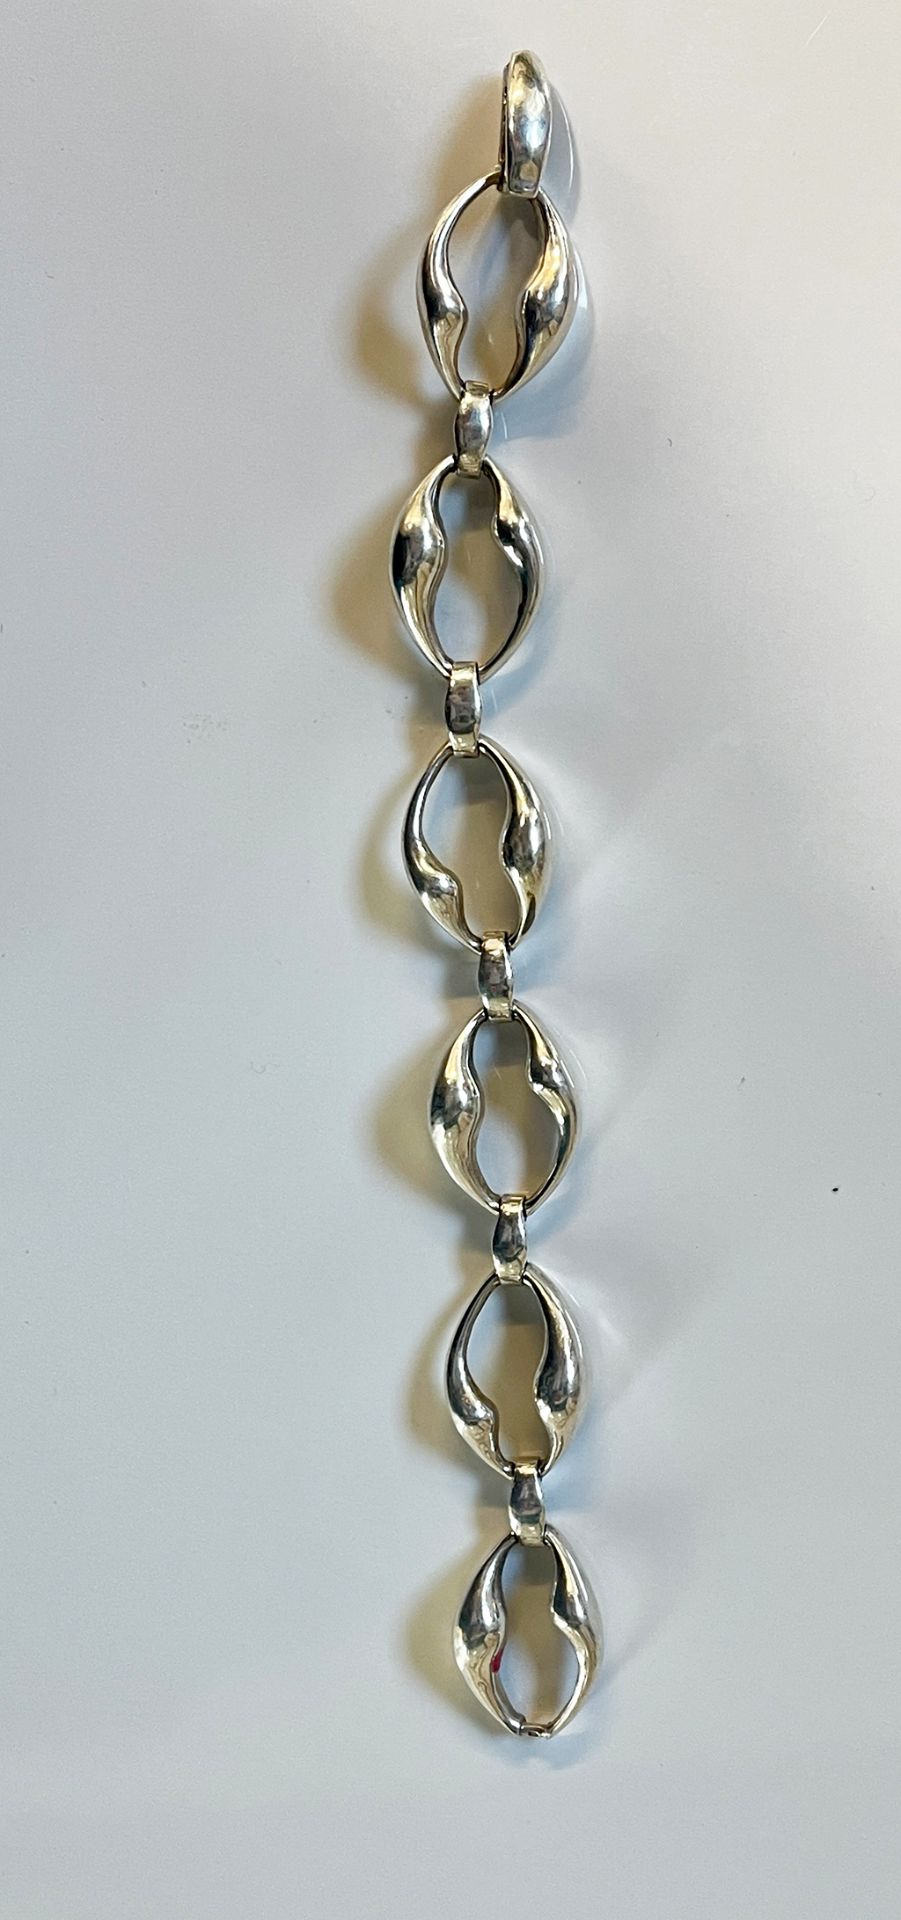 Vintage Silver bracelet 925 silver